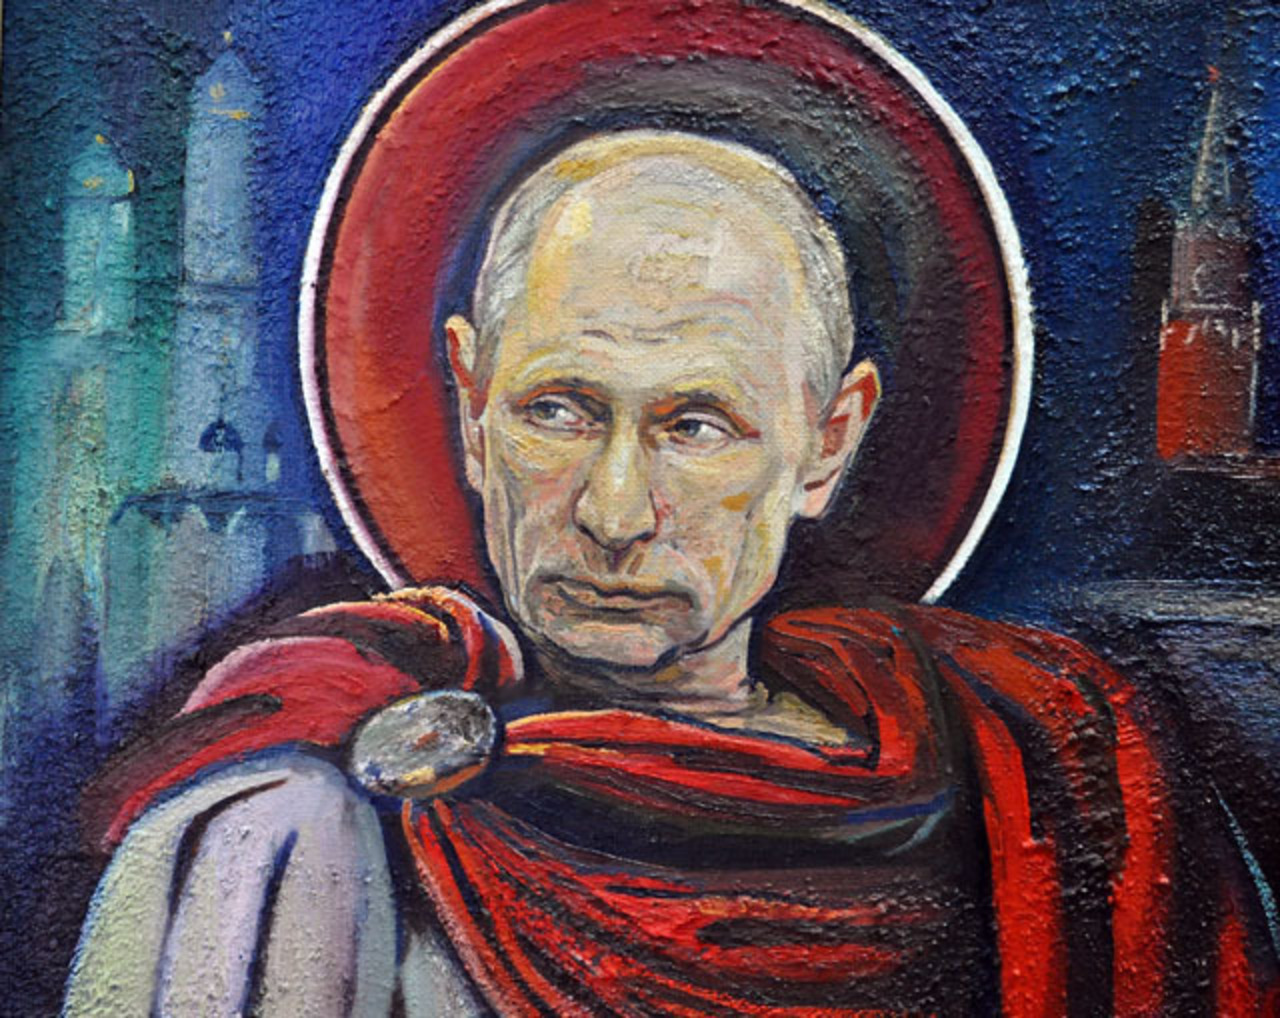 Фото Путина В Храме Минобороны